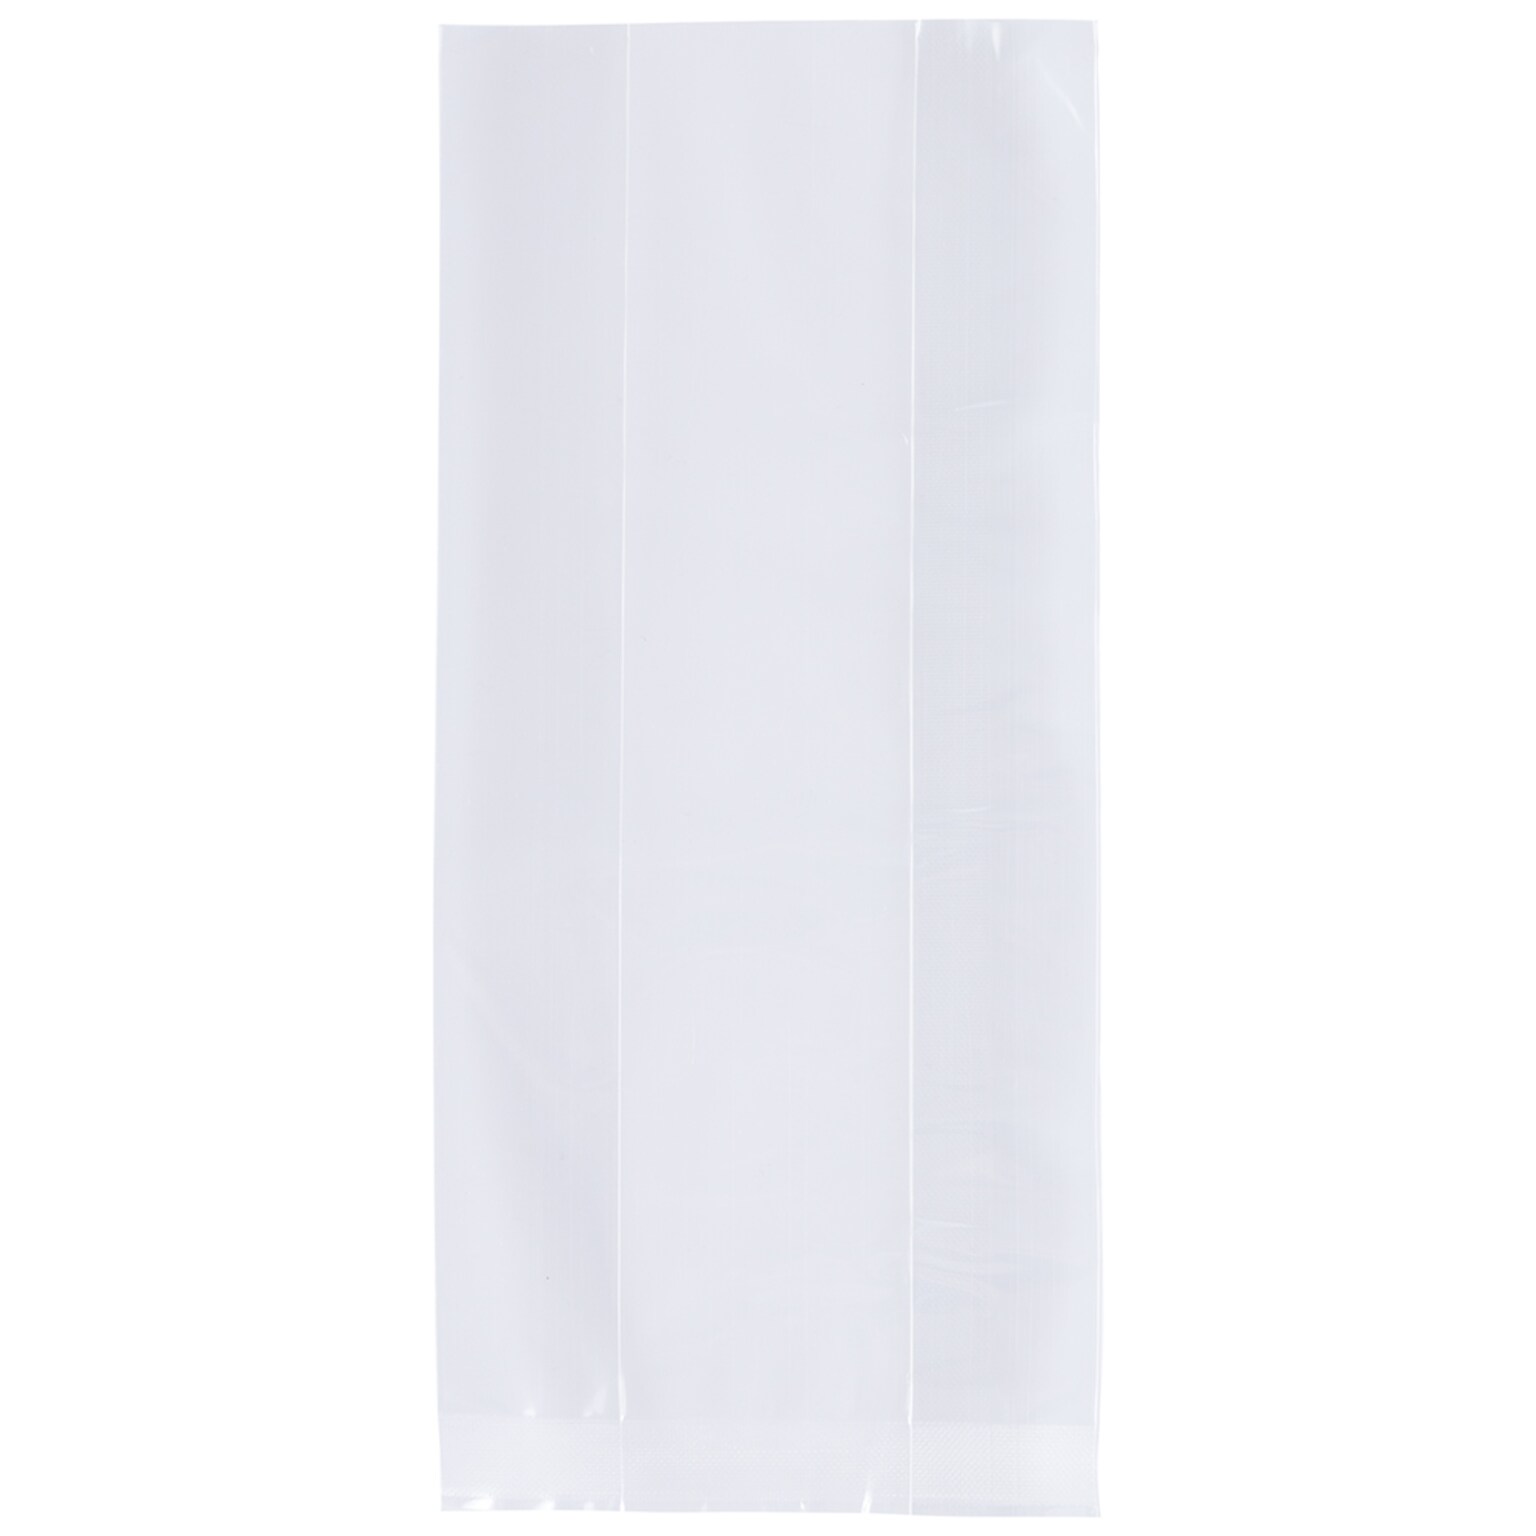 JAM Paper Cello Bag, Medium, Clear, 100 Bags/Pack (FDA3B)